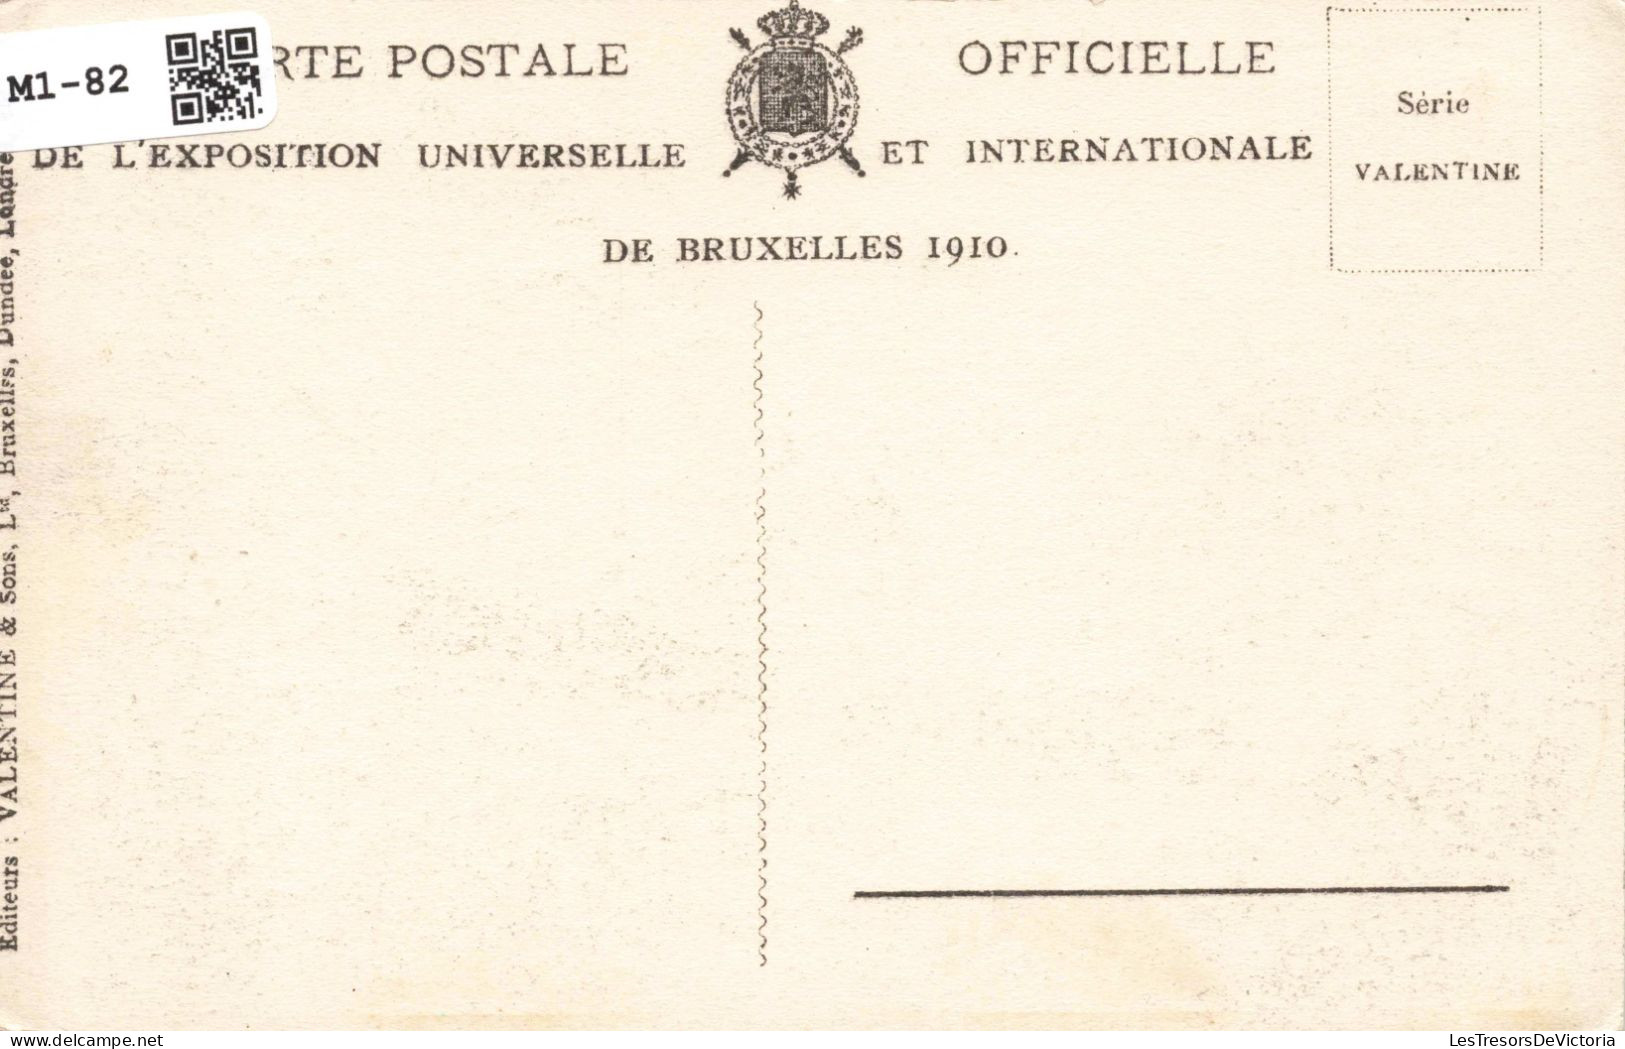 BELGIQUE - Exposition De Bruxelles 1910 - Le Bassin - Animé - Edit. Valentine - Carte Postale Ancienne - Plätze